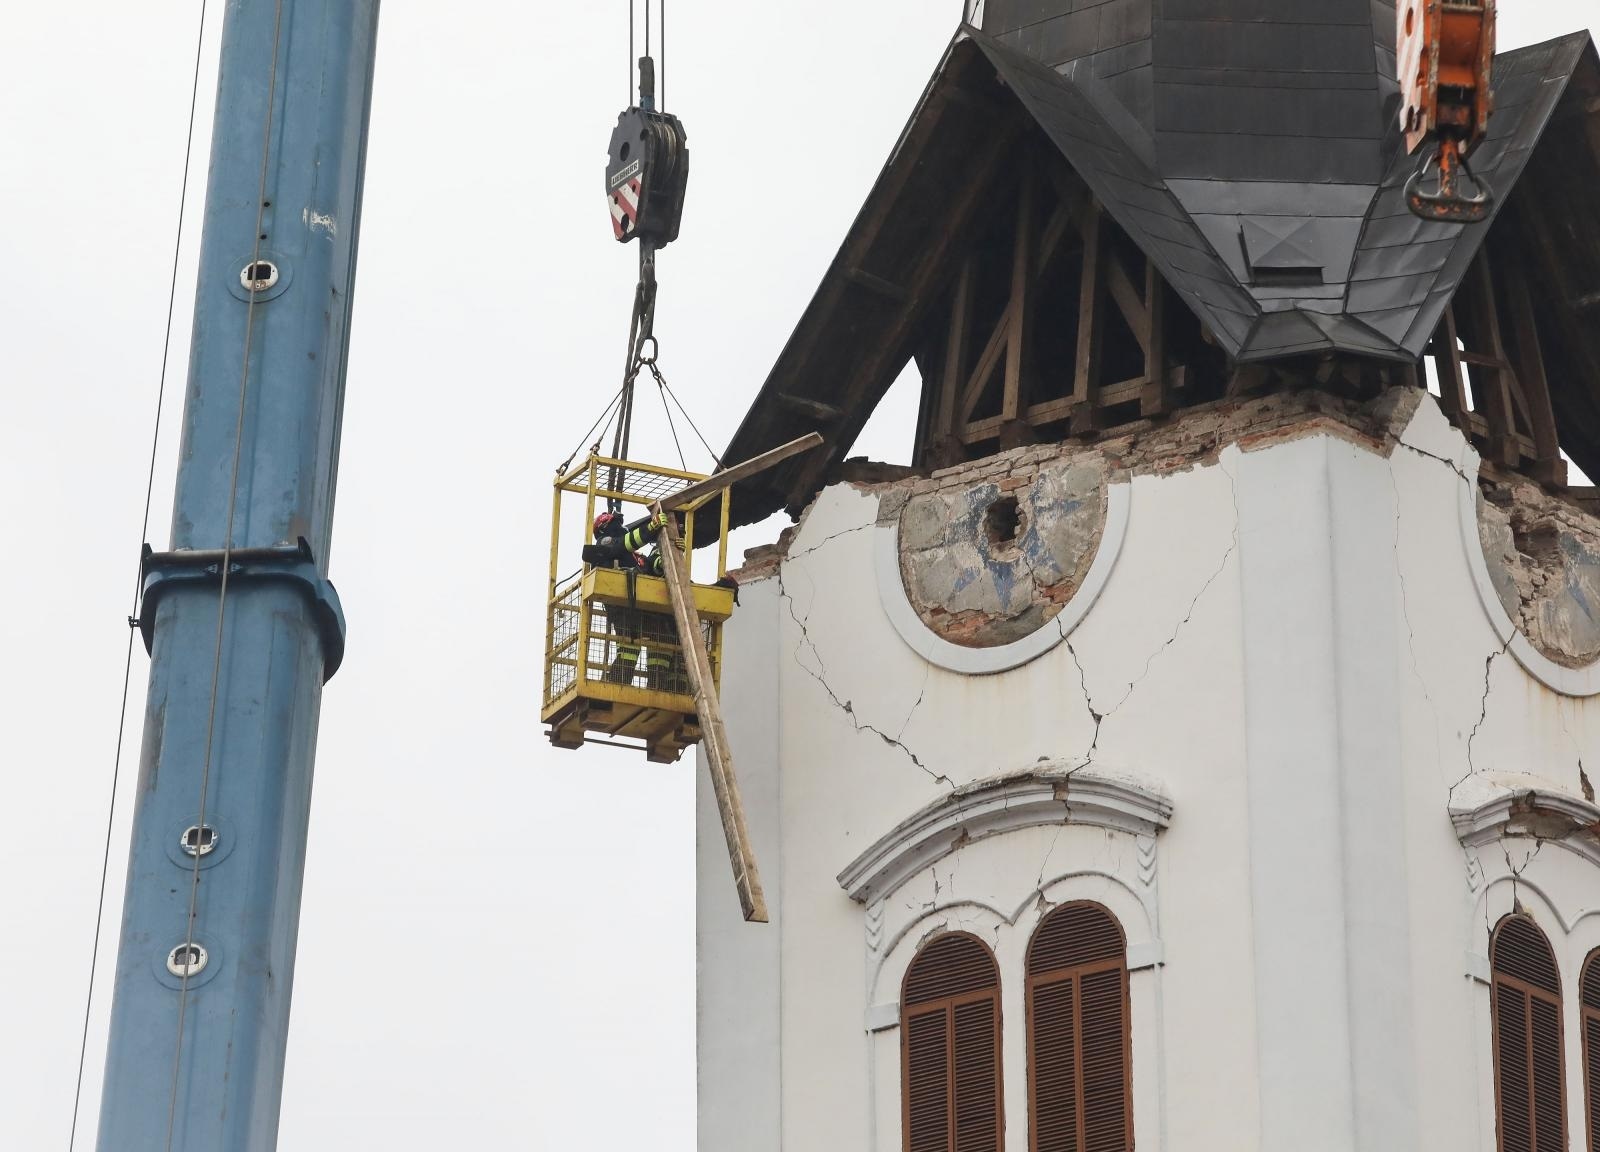 08.01.2021., Sisak - Zbog ostecenja u potresu 29. prosinca 2020. godine, kao i u naknadnim potresima proteklih dana, uklanja se toranj sisacke katedrale. Photo: Edina Zuko/PIXSELL